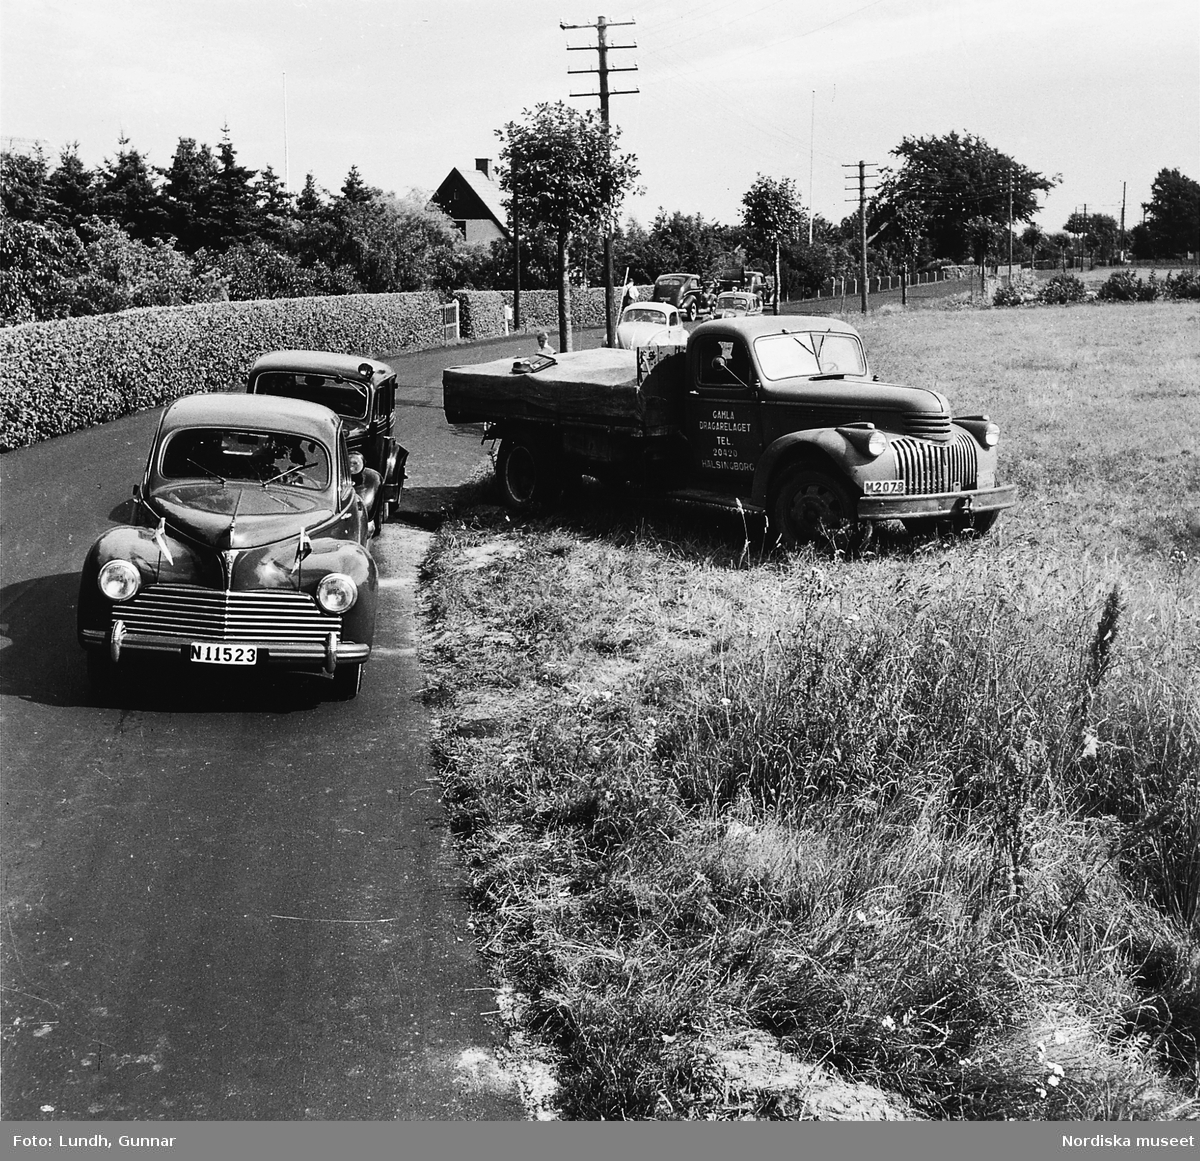 Trafikolycka i Skåne år 1950. Bilar är parkerade längs vägkanten och en lastbil från "Gamla dragarelaget Hälsingborg" står på åkern.